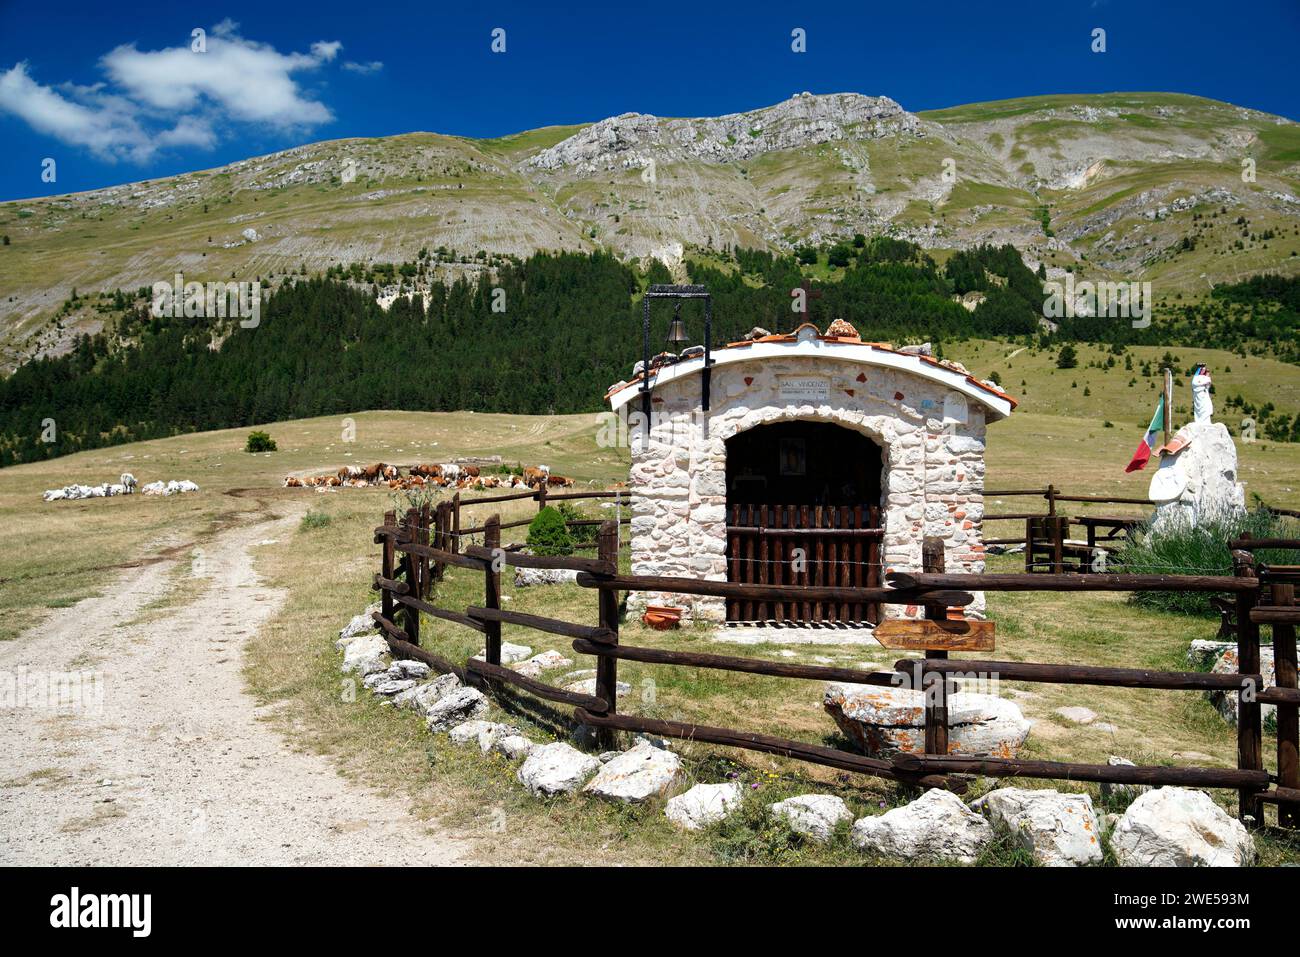 Parc national du Gran Sasso et Monti della Laga, région des Abruzzes, Italie Banque D'Images